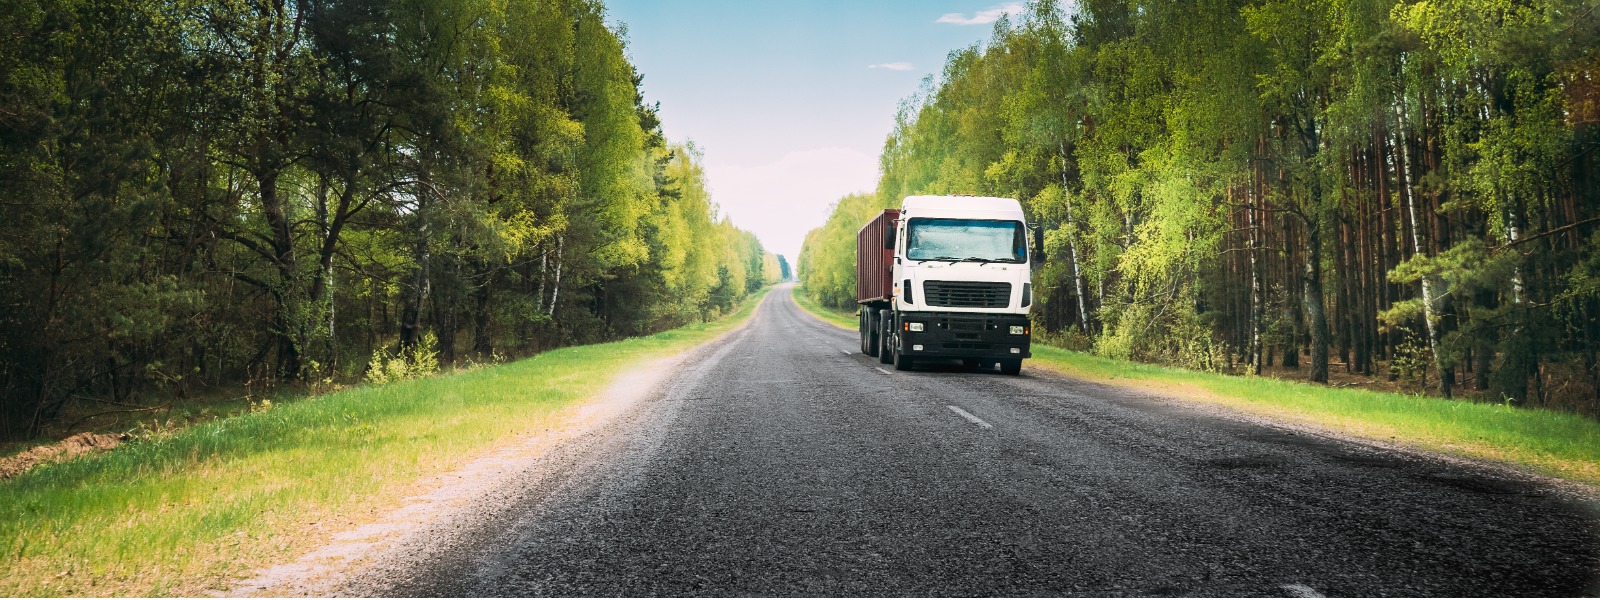 METALLIX-PUIT OÜ - Pakume kvaliteetseid kaubaveoteenuseid, kullerteenuseid ning mitmekülgseid transpordilahendusi, olles...